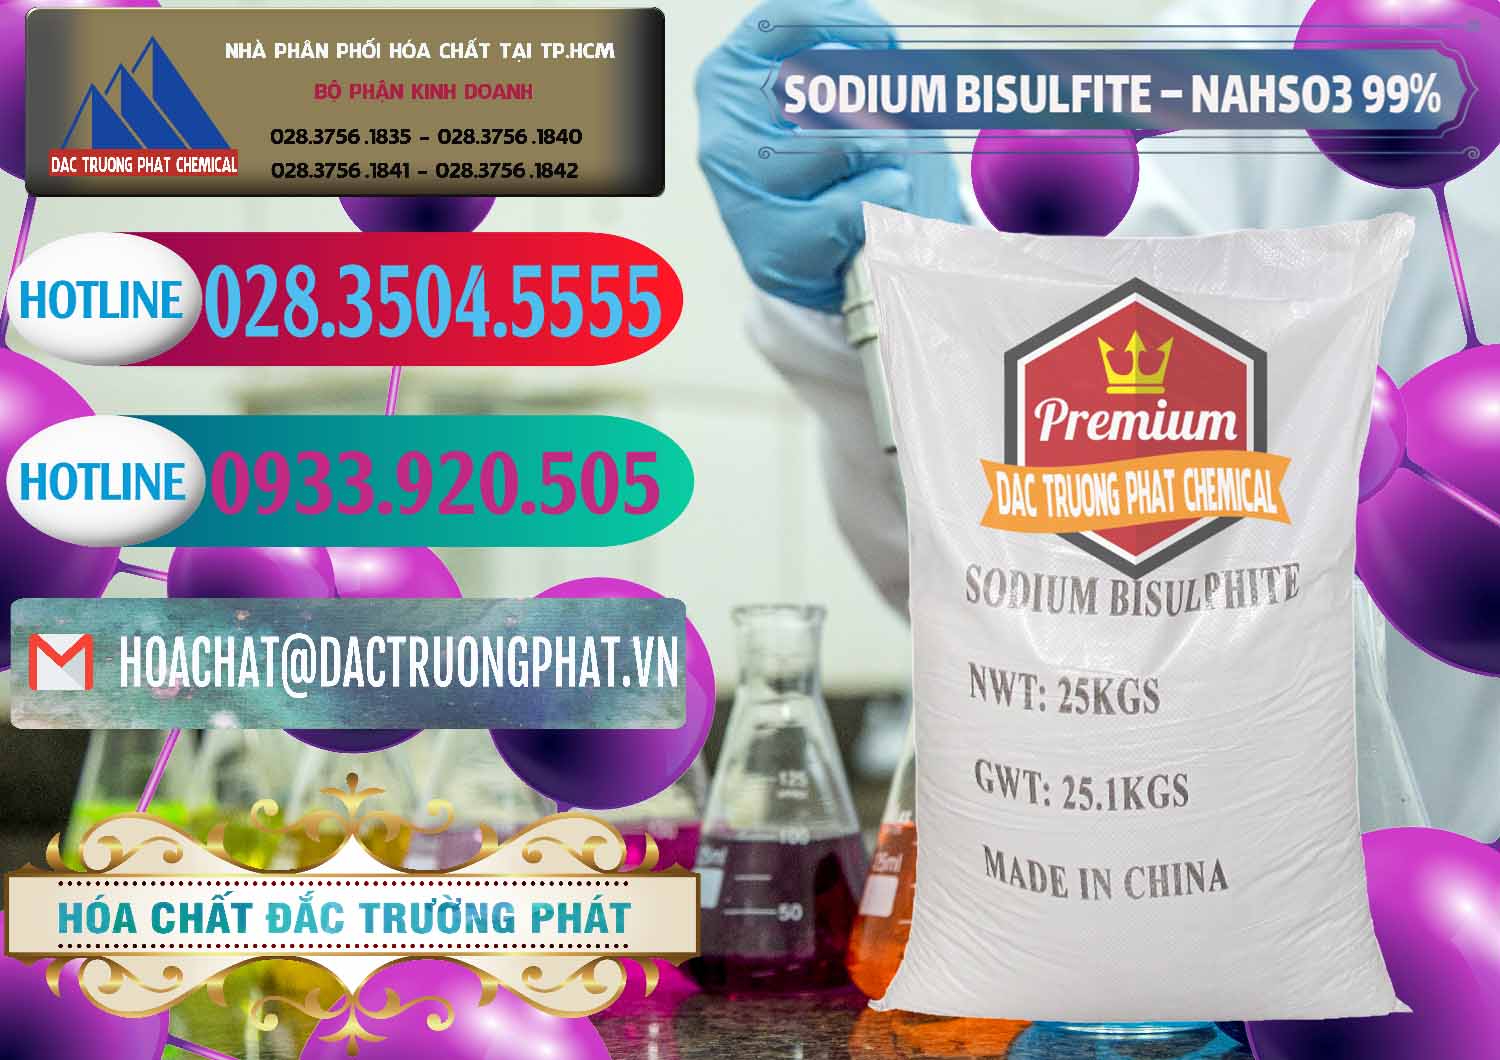 Công ty cung ứng ( bán ) Sodium Bisulfite – NAHSO3 Trung Quốc China - 0140 - Nơi nhập khẩu - phân phối hóa chất tại TP.HCM - truongphat.vn